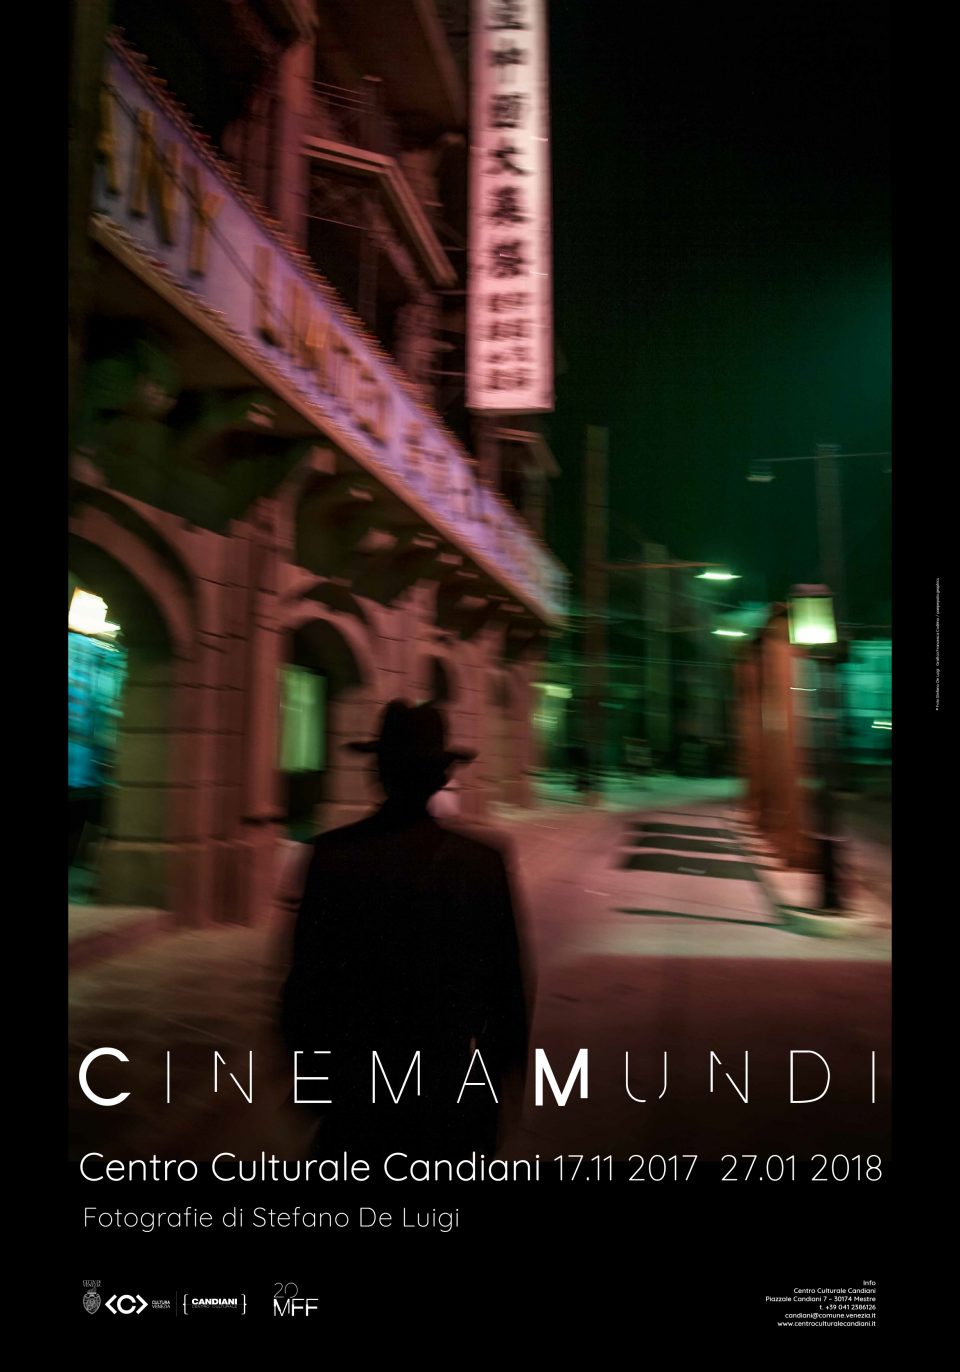 Cinema Mundi by Stefano De Luigi